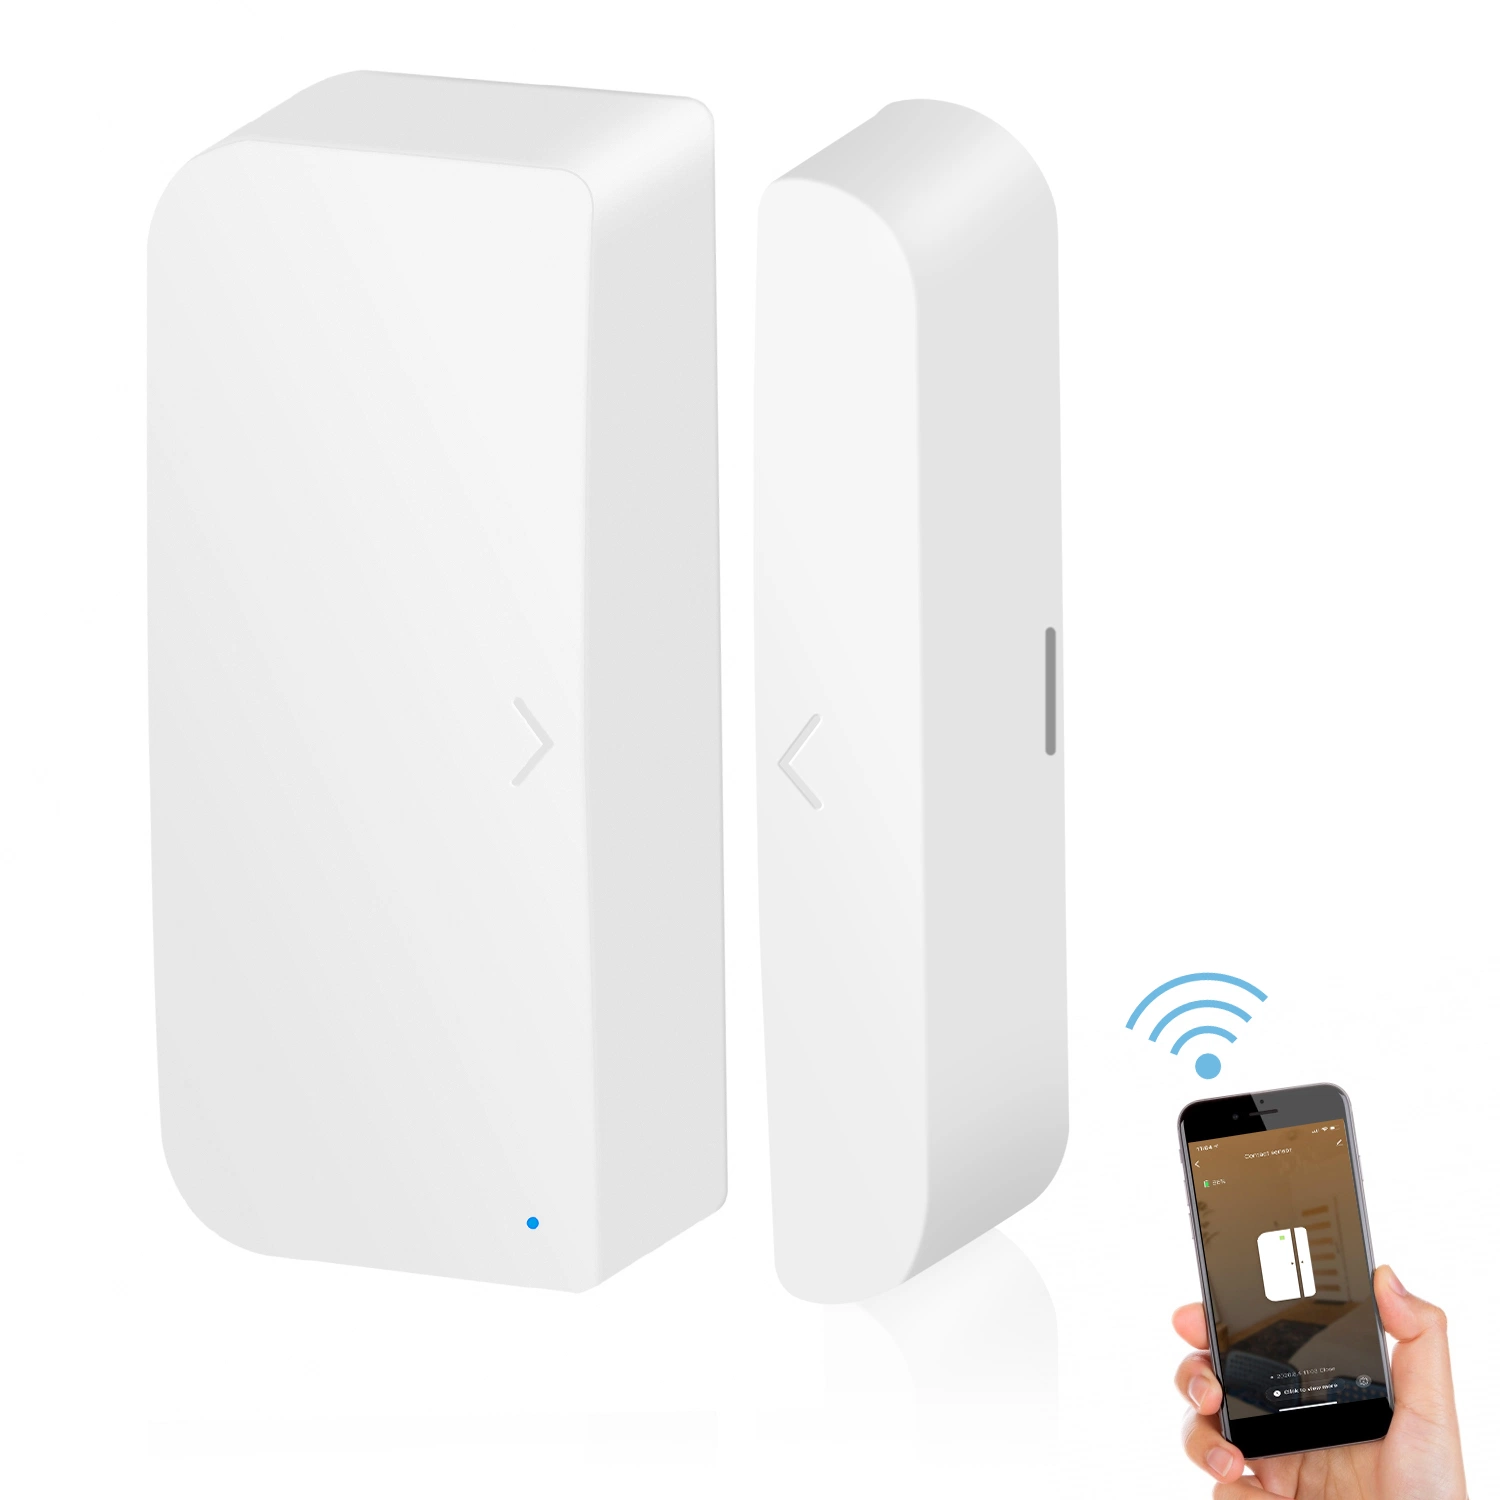 MINCO Home Smart Life Remote Control беспроводной магнитный дверной контакт/датчик Для системы оповещения о домашних условиях, Tuya Smart WiFi, датчик скользящей двери